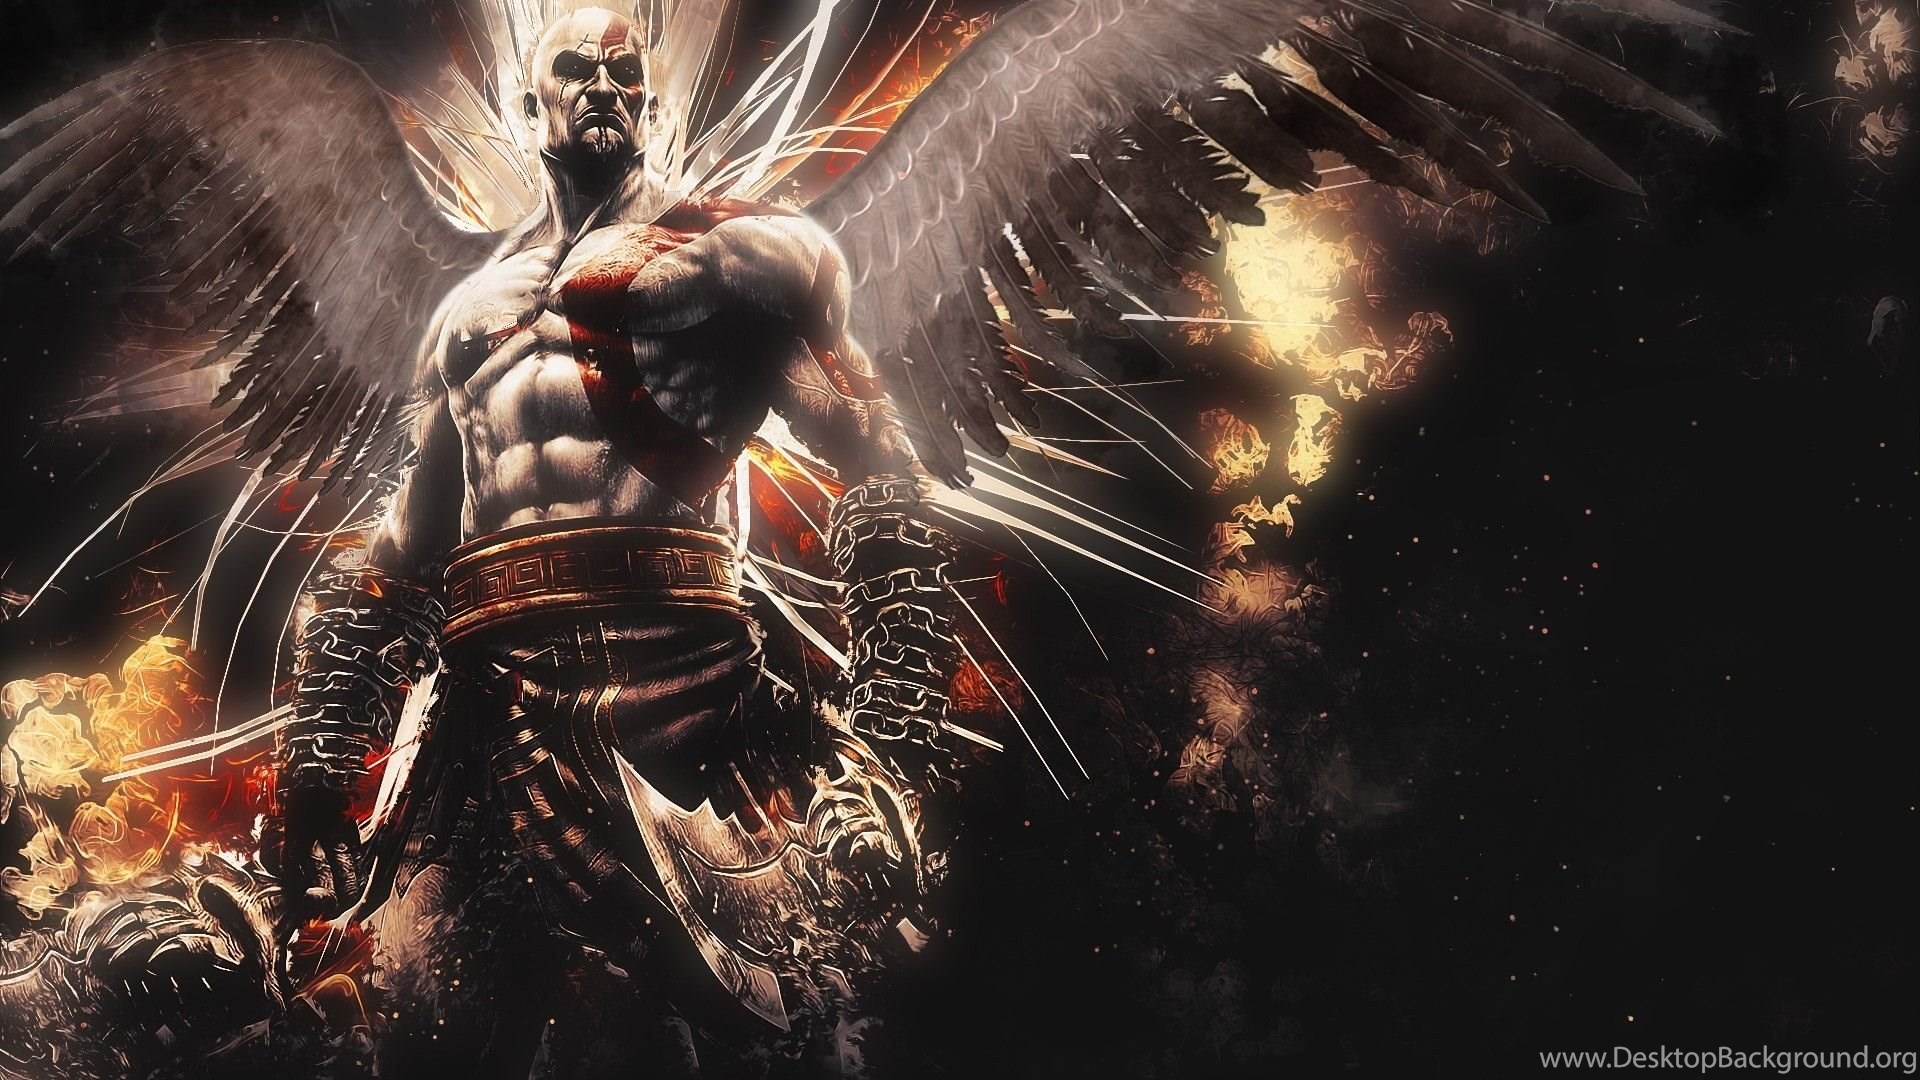 God Of War: Ascension: Angel Of Death Wallpaper And Image. Desktop Background